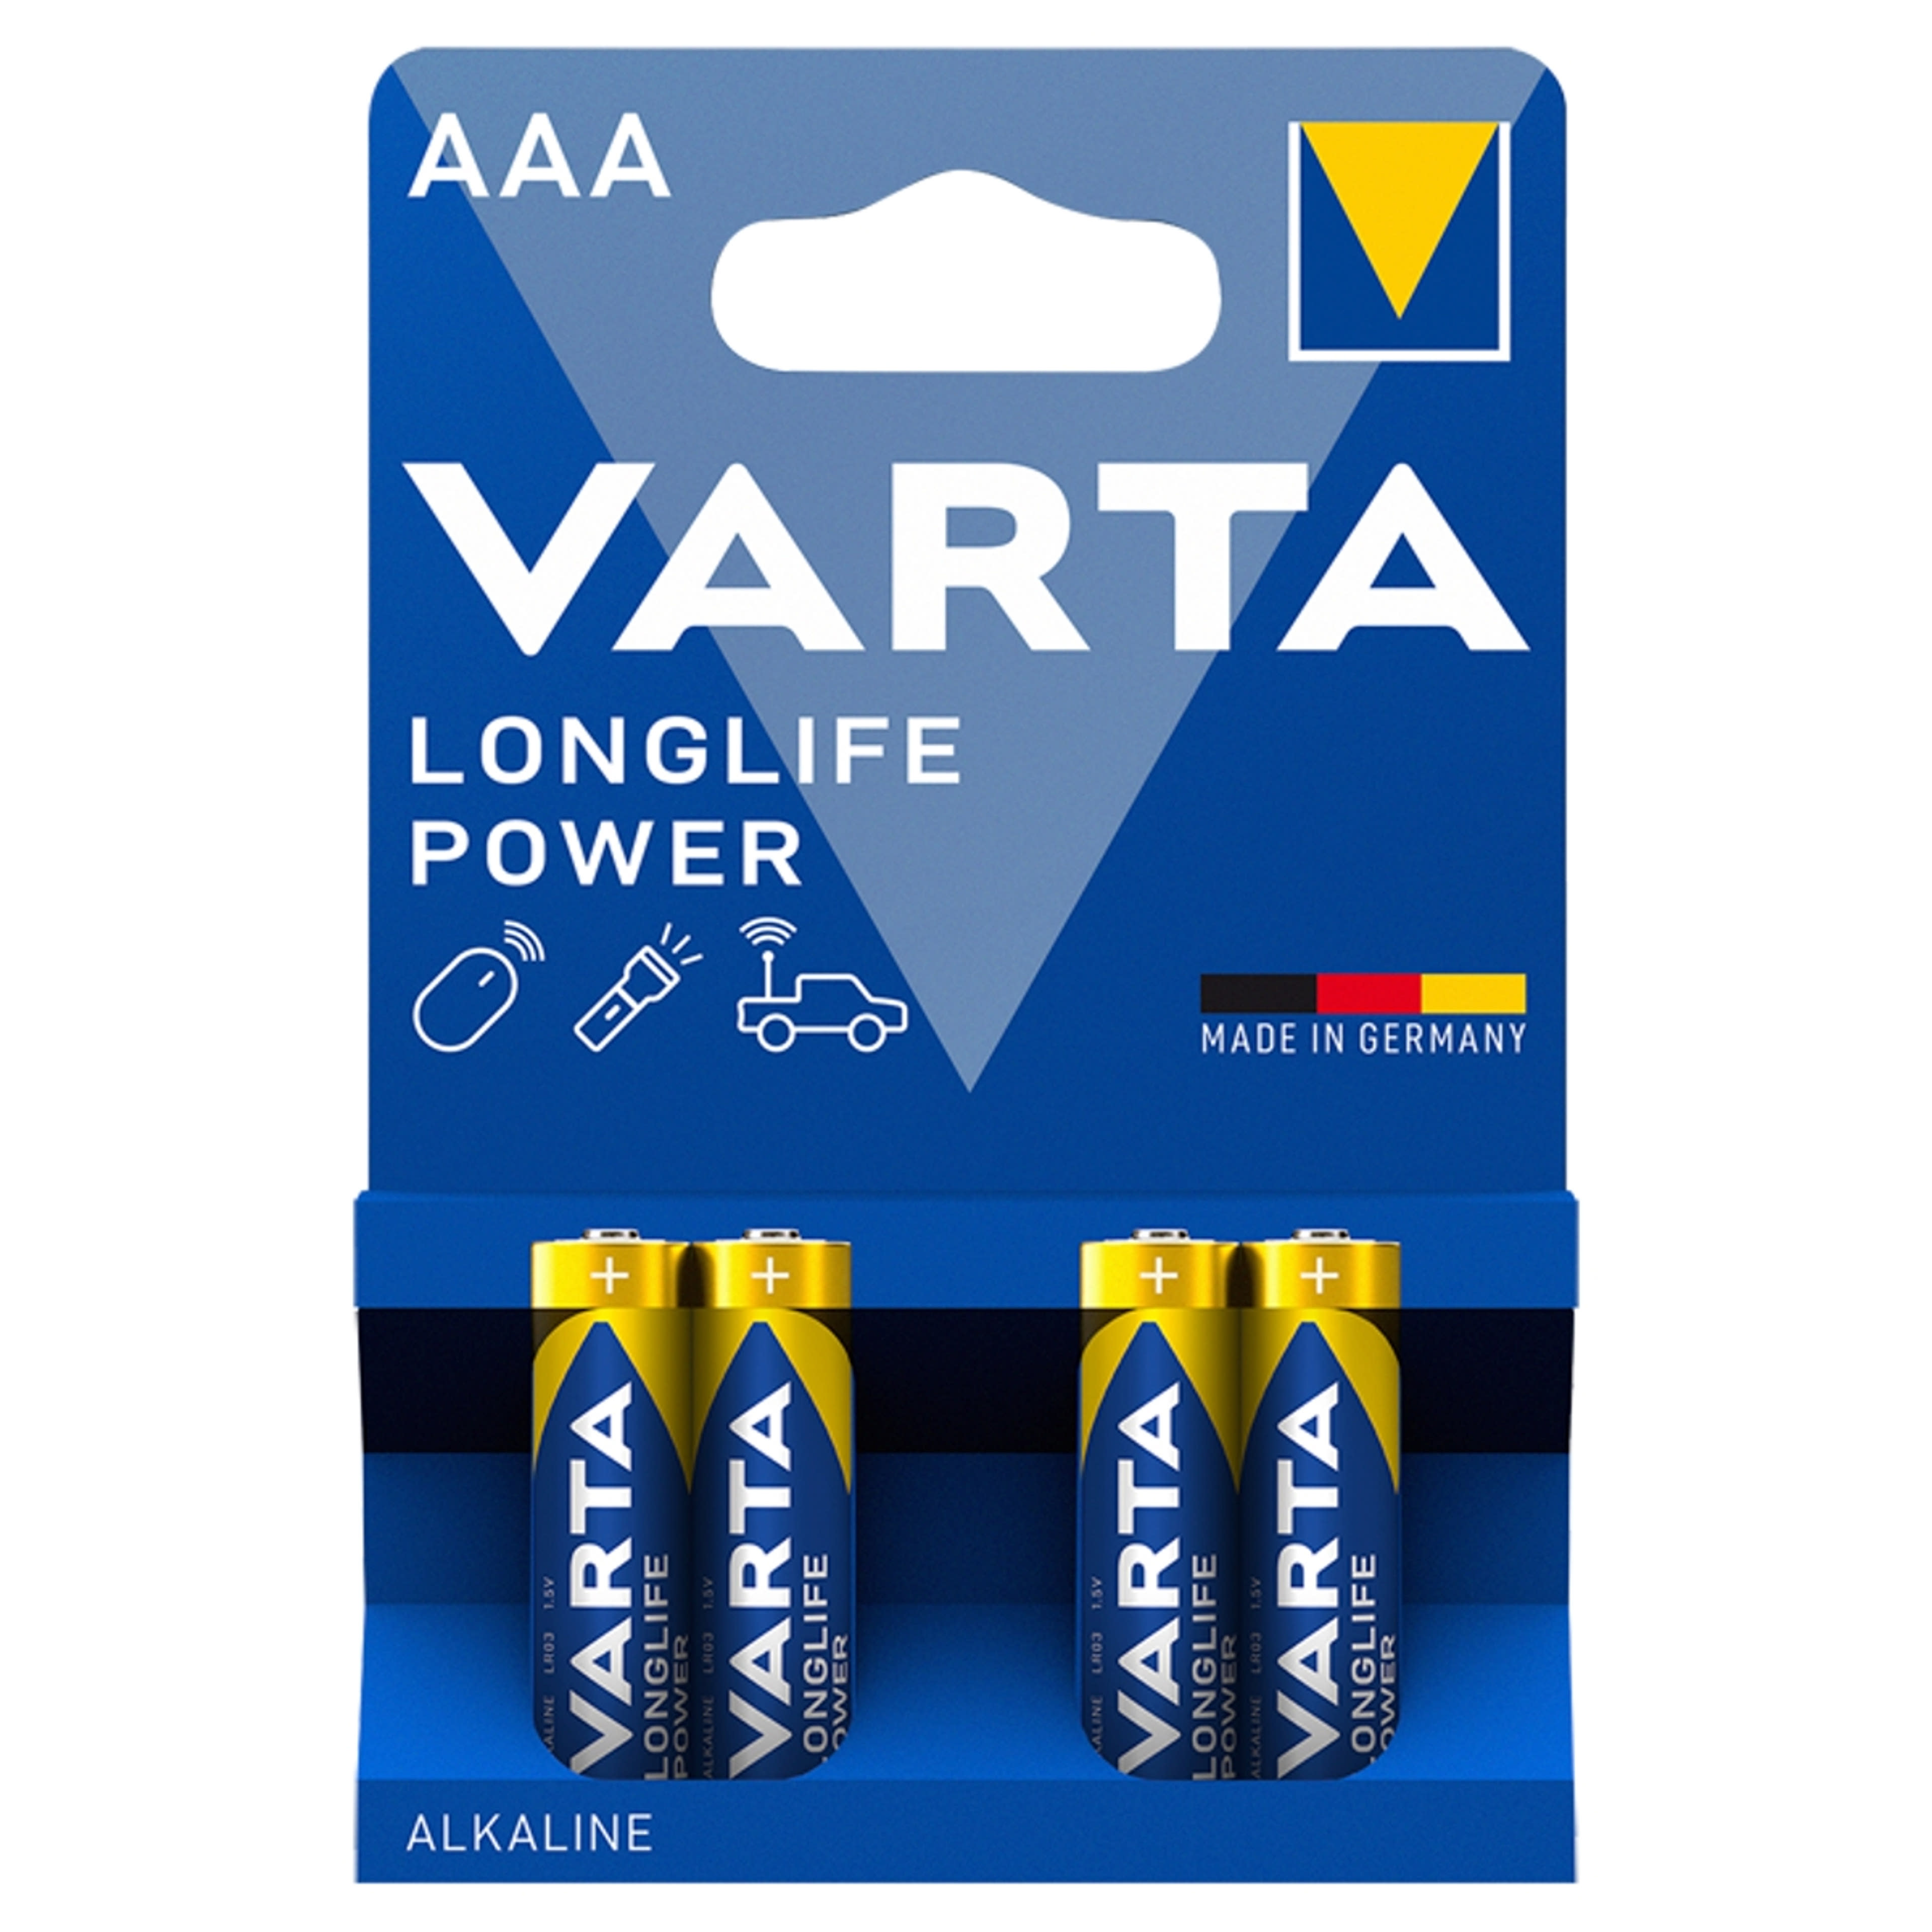 Varta Longlife Power AAA LR03 1,5 V nagy teljesítményű alkáli elem - 4 db